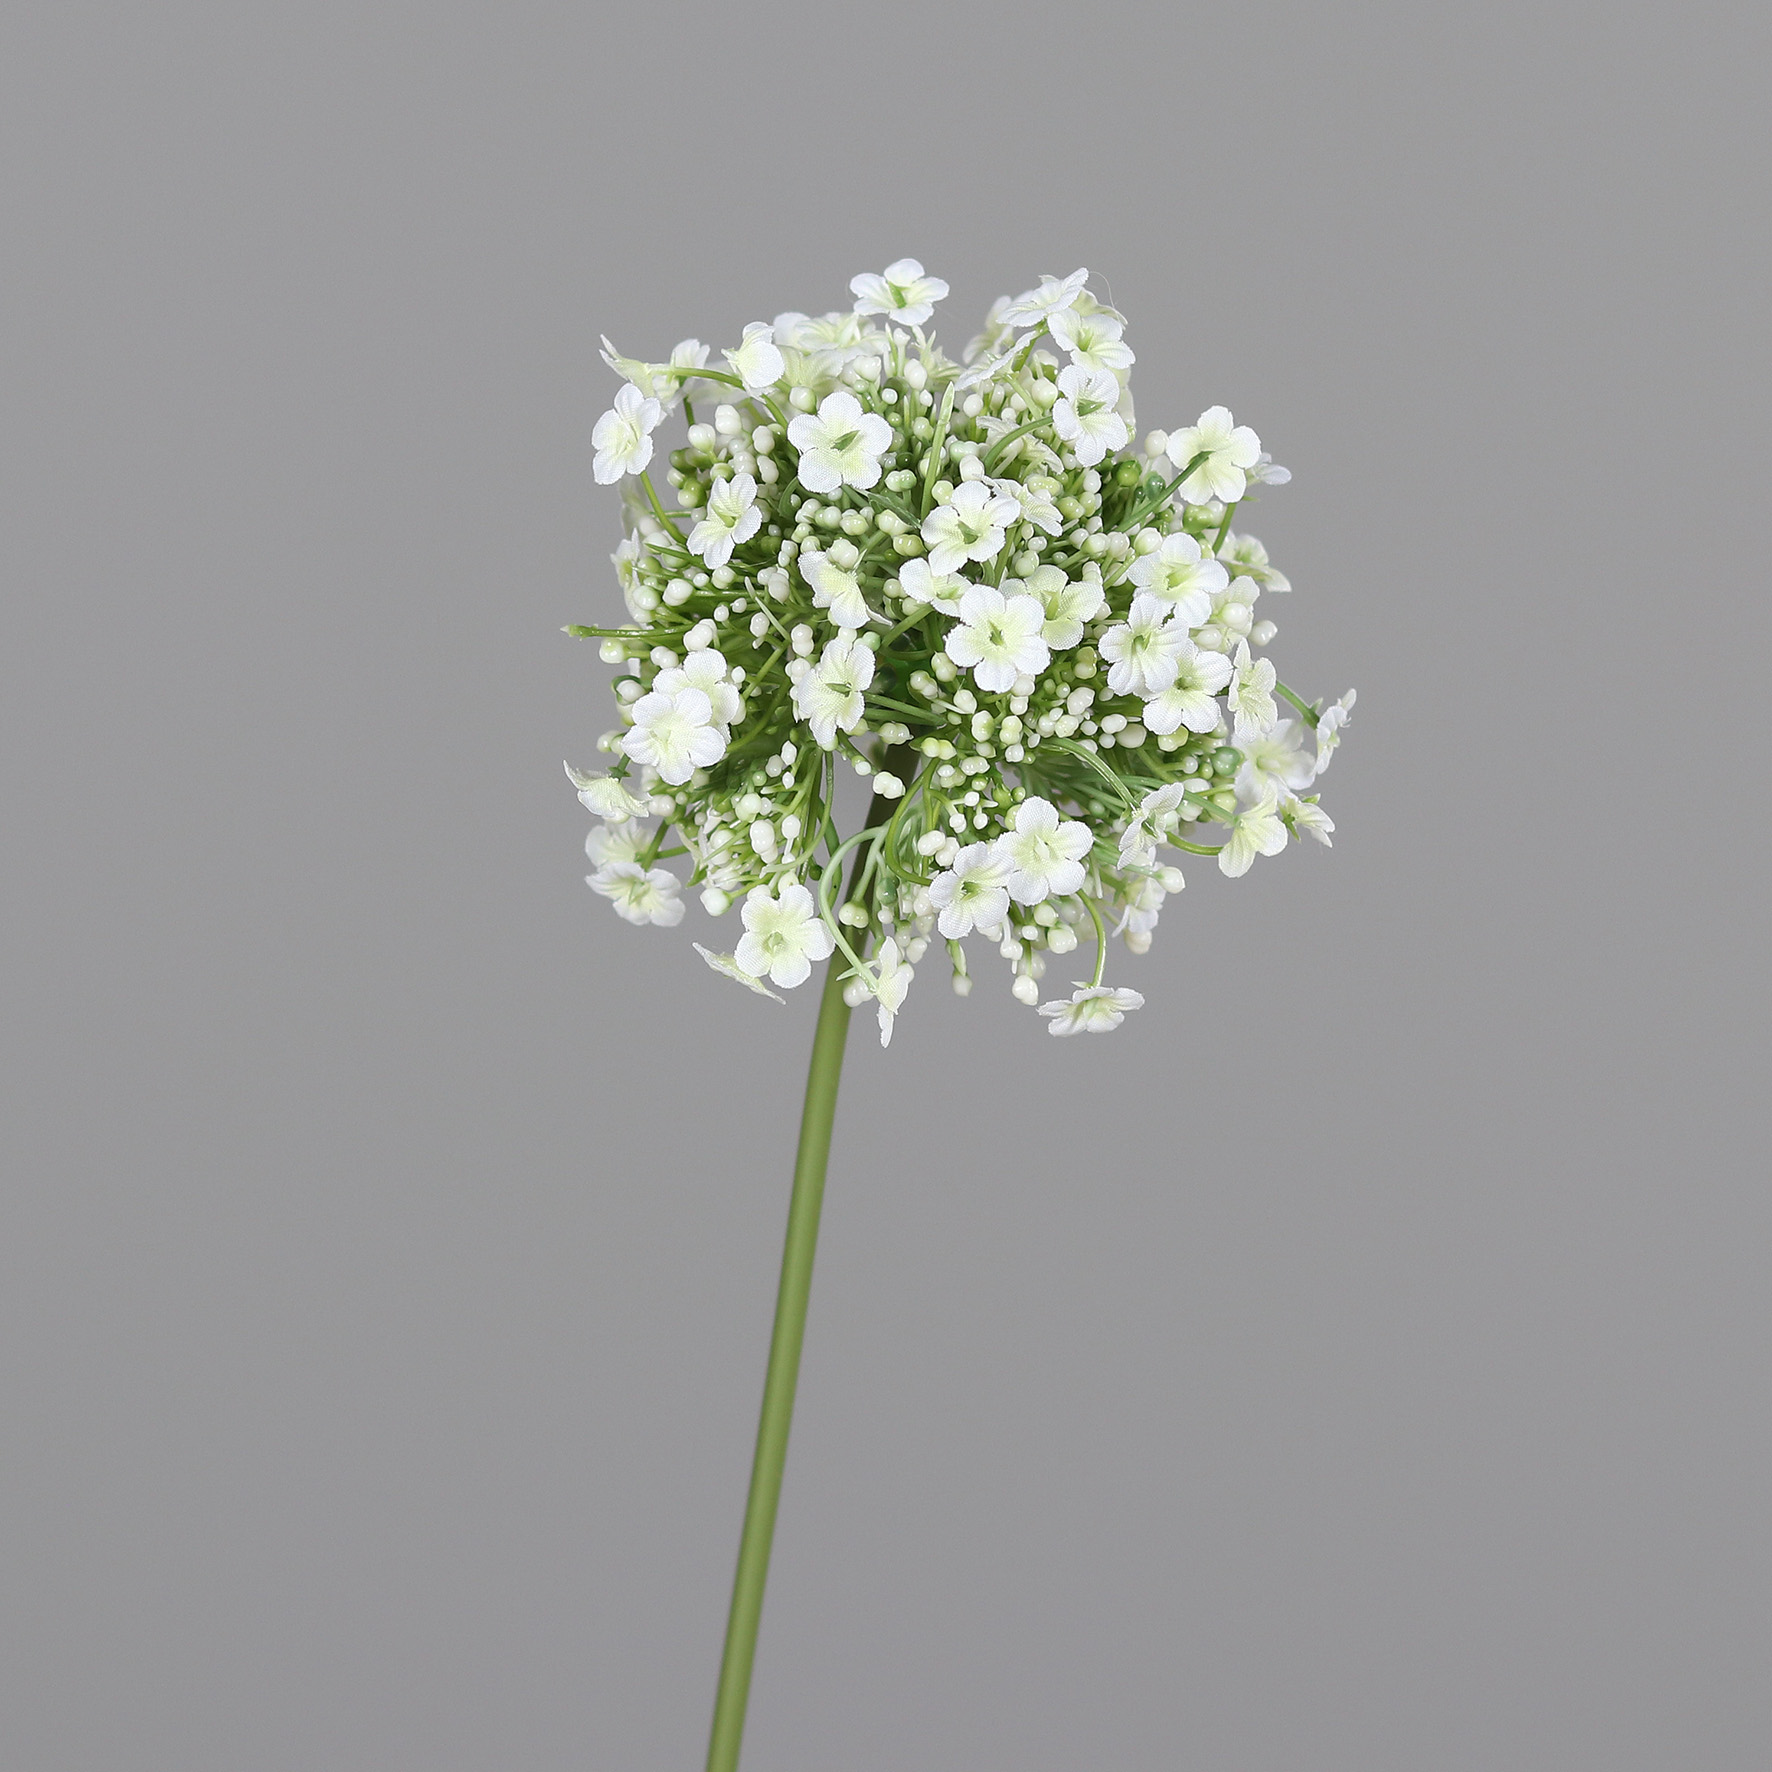 Alliumkugel mit Blüten 46cm weiß DP Kunstlbumen künstliche Blumen Allium Lauch